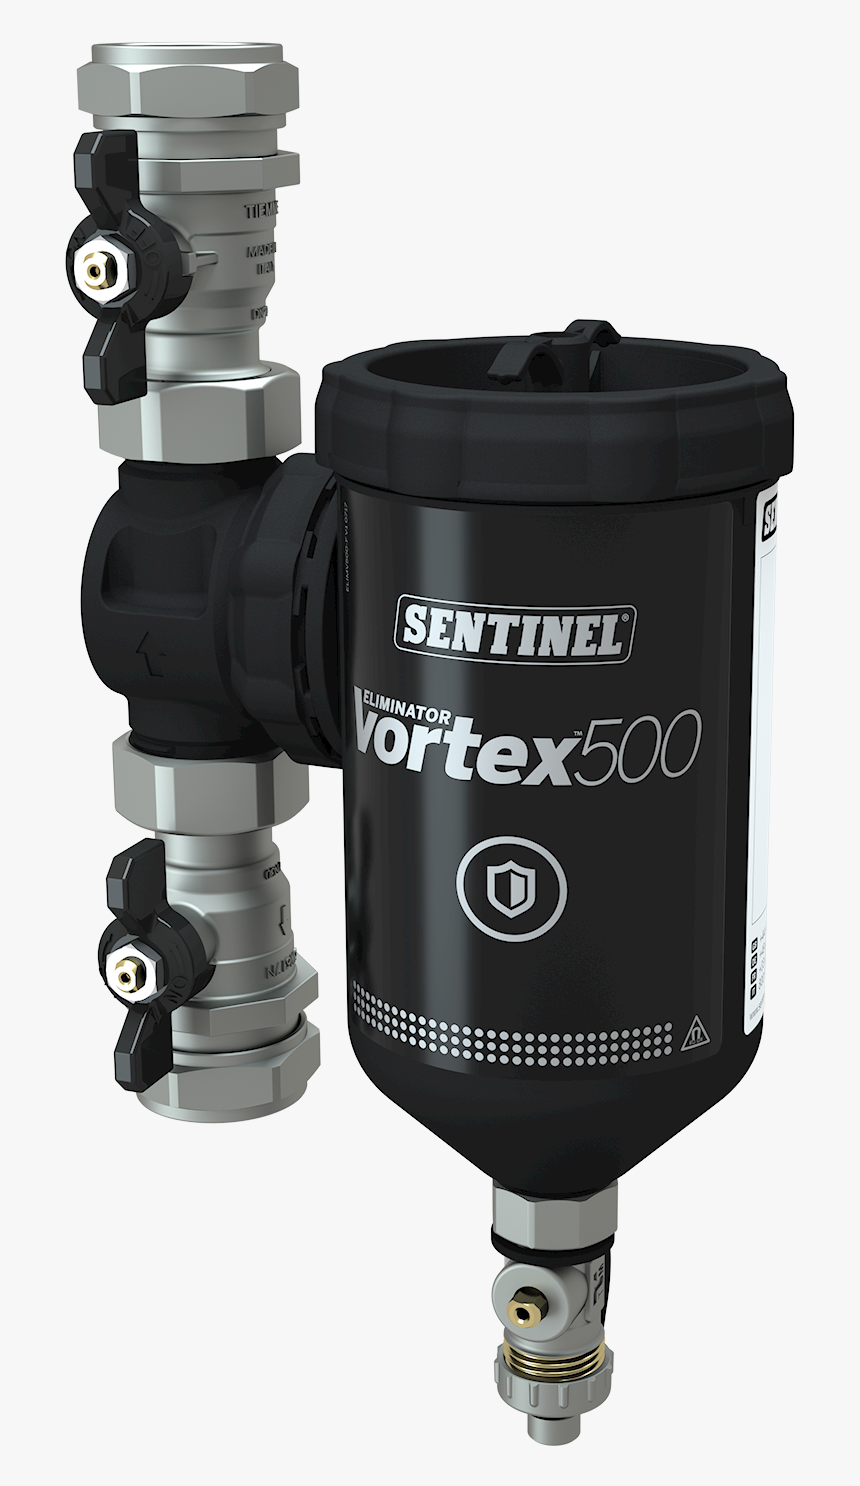 Sentinel Eliminator Vortex 500 Grp T-piece - Sentinel Eliminator, HD Png Download, Free Download